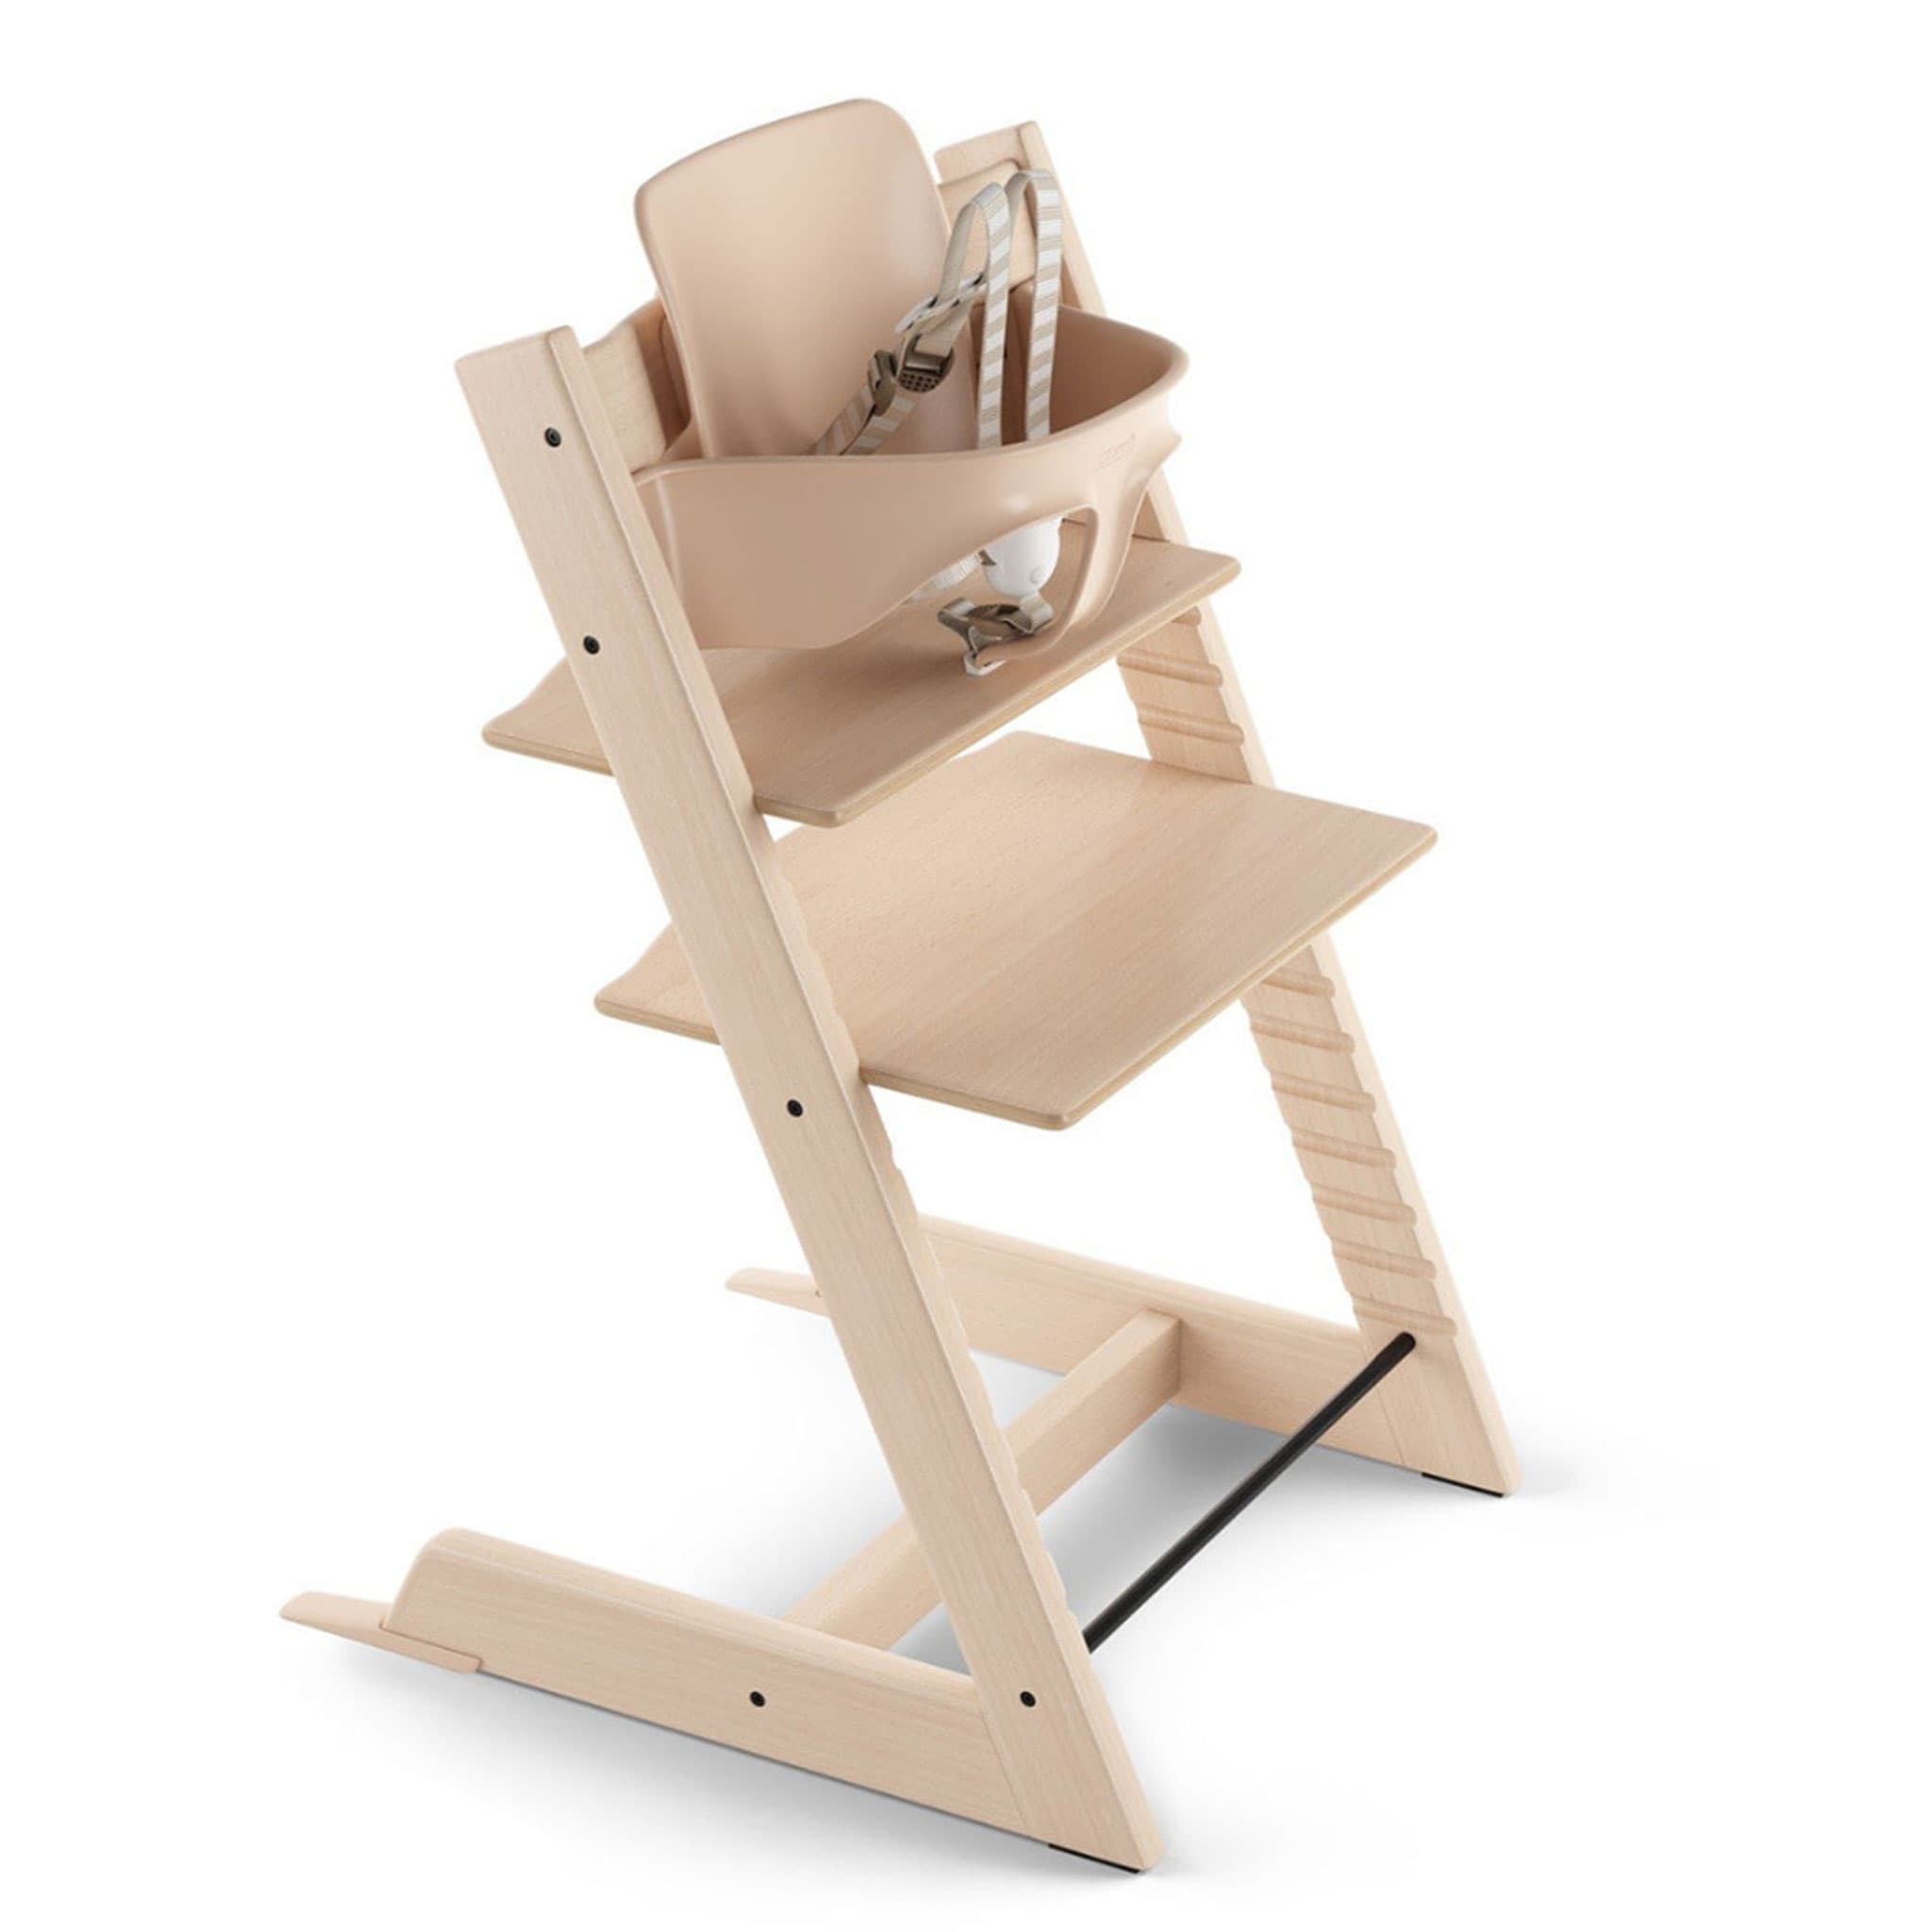 Blausberg Baby *41 couleurs* coussin set de siège pour chaise haute Stokke Tripp Trapp tous les matériaux sont certifiés OEKO-TEX® Standard 100-100% made in Hamburg Triangle Jaune 